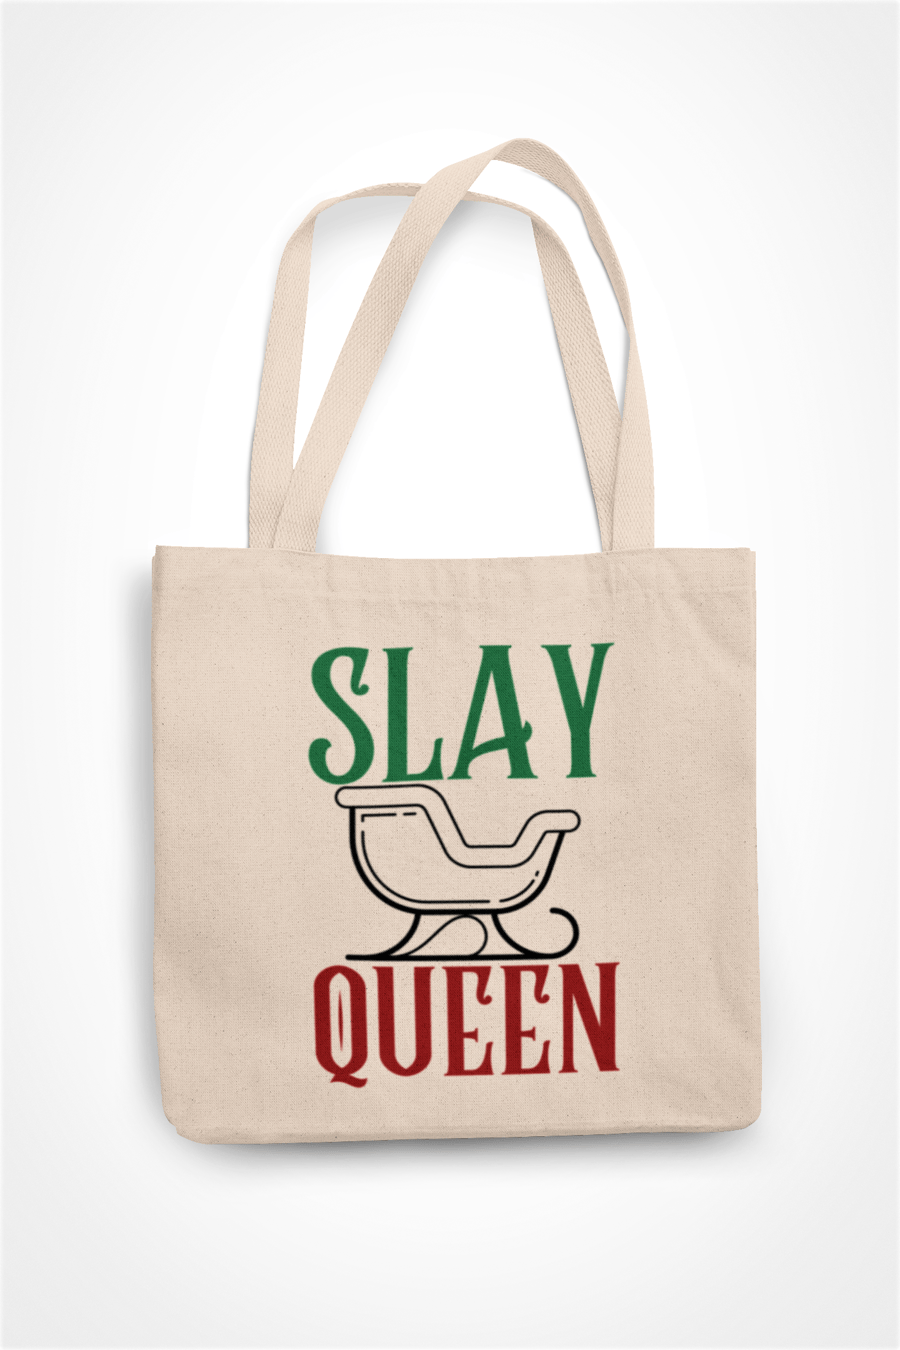 Slay Queen- Funny Gay Christmas Tote Bag - Shopper Bag xmas Gift